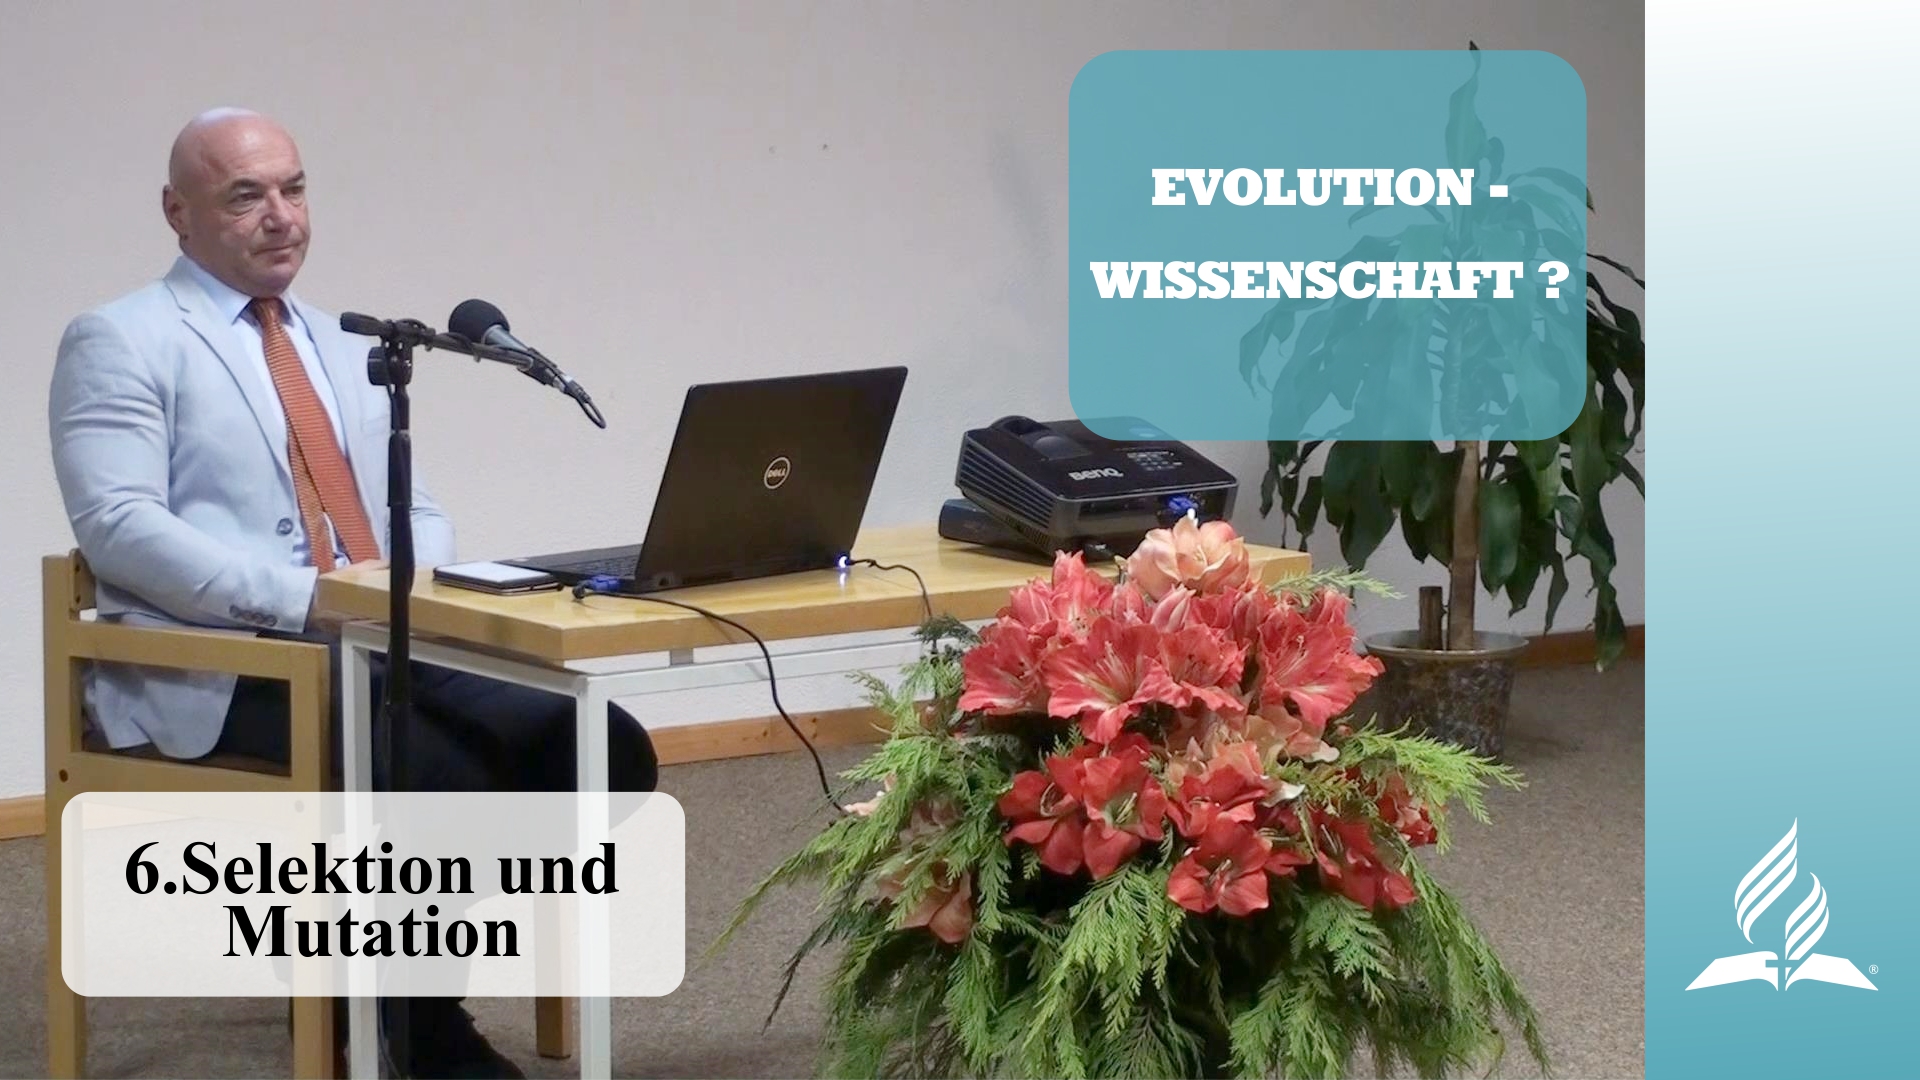 6.Selektion und Mutation – EVOLUTION-WISSENSCHAFT? | Dr. med. univ. Klaus Gstirner